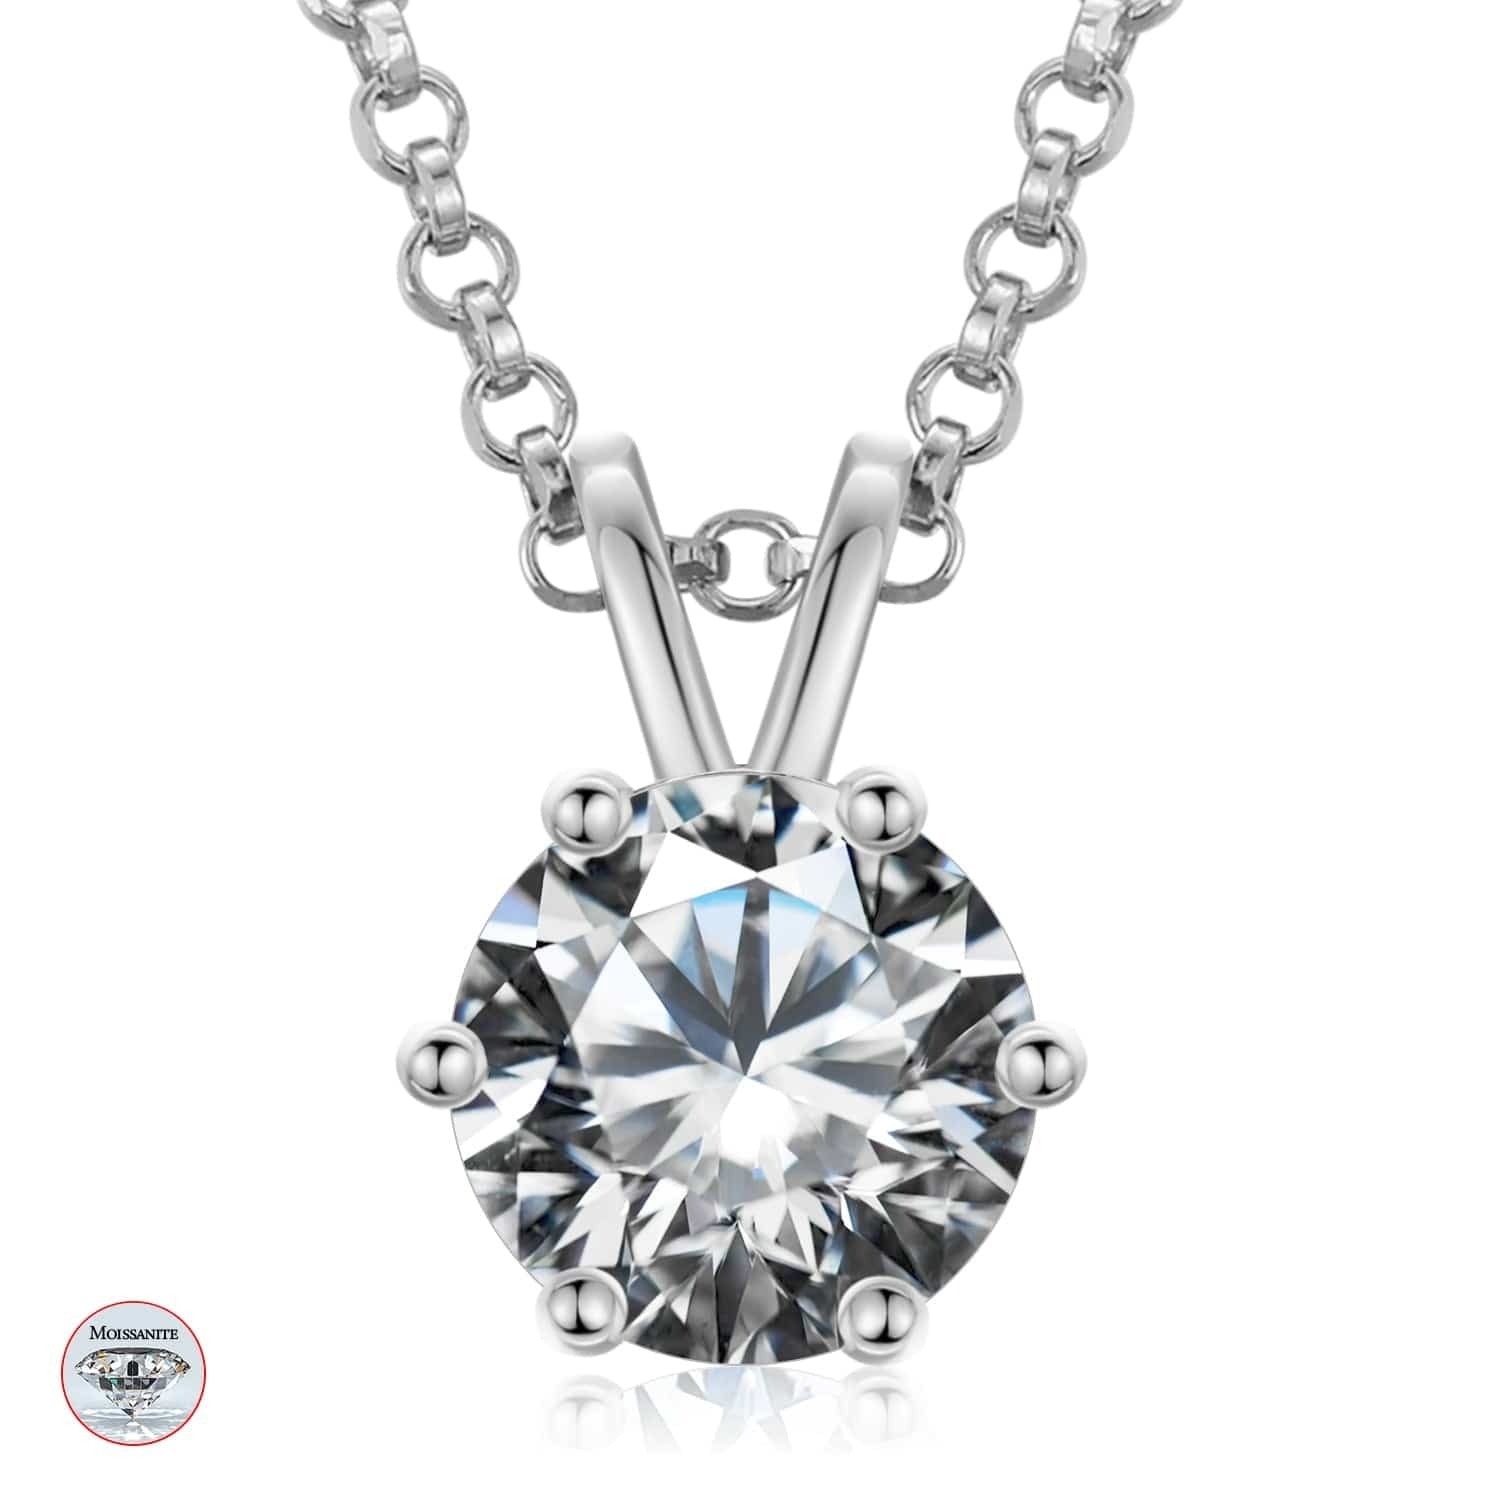 925 Sterling Silver 6 Prong Set 6.5mm - 1ct D Color VVS1 Clarify Moissanite Diamond Solitaire Pendant Necklace For Women